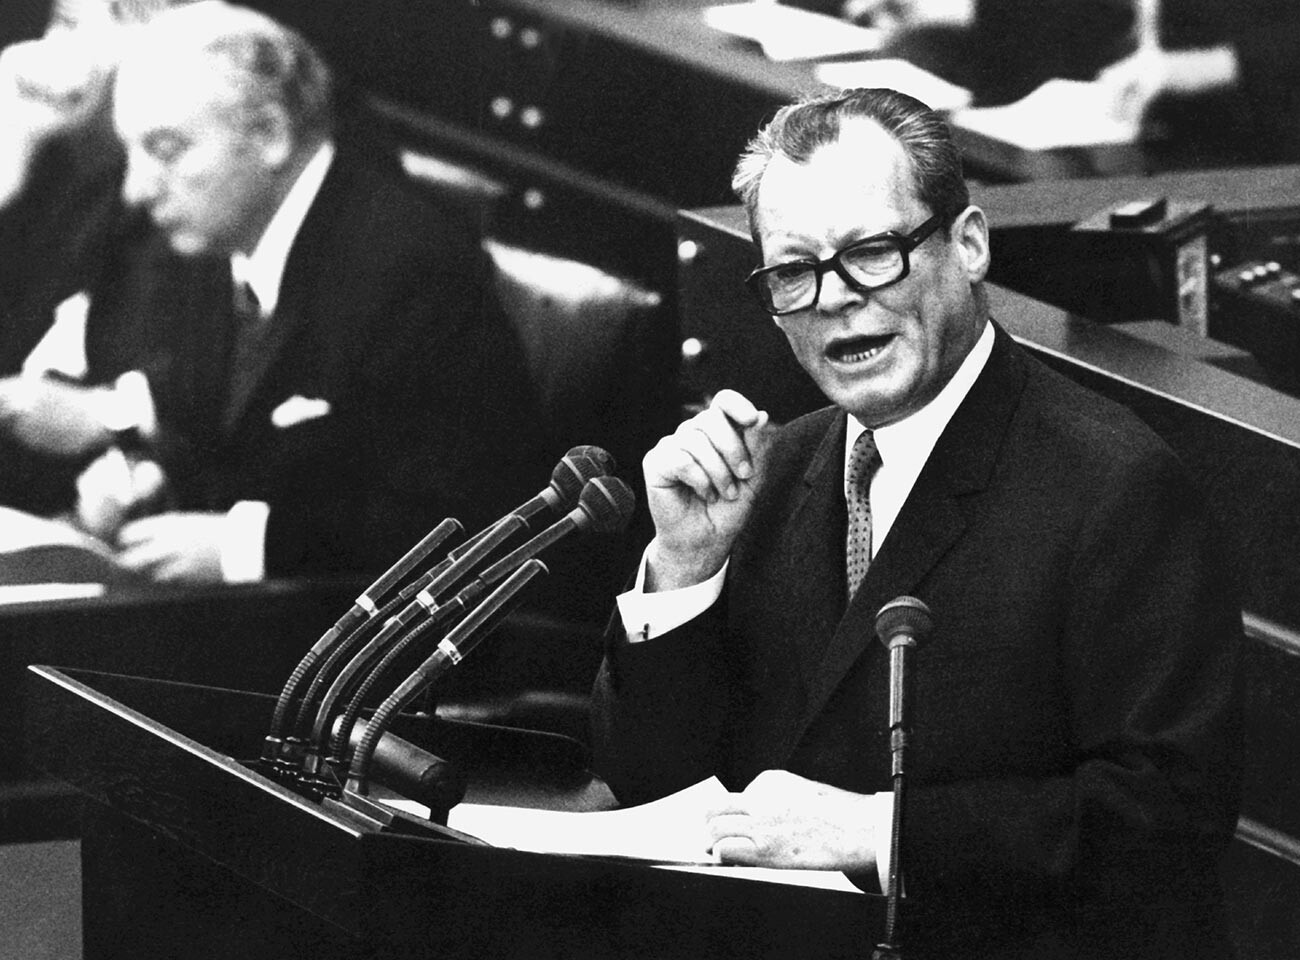 Bundeskanzler Willy Brandt gibt am 28. September 1969 im Deutschen Bundestag in Bonn eine Regierungserklärung ab.